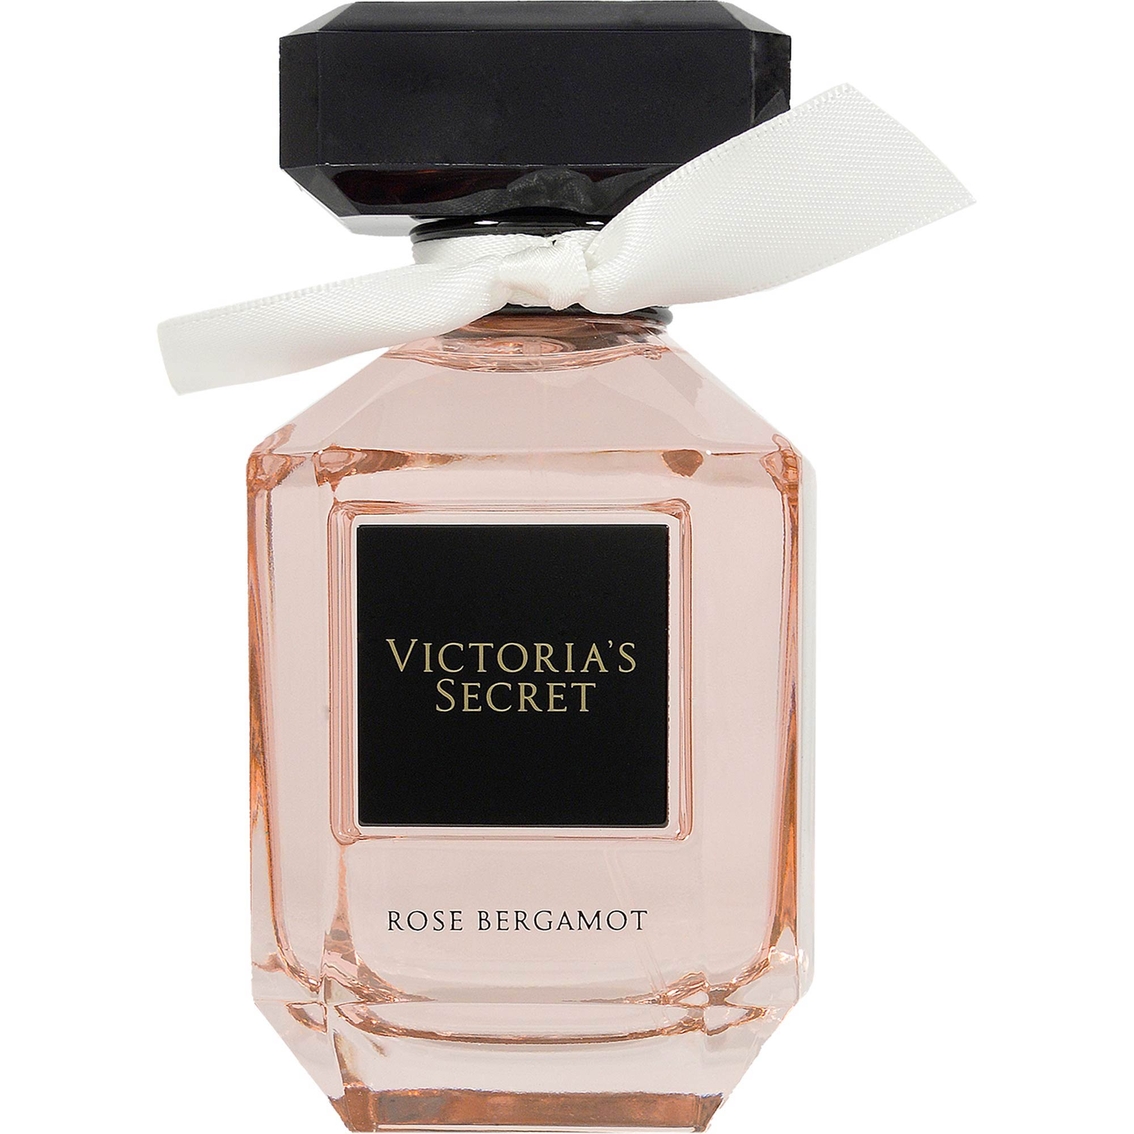 Victoria's Secret Rose Bergamot Eau De Parfum | Women's Fragrances ...